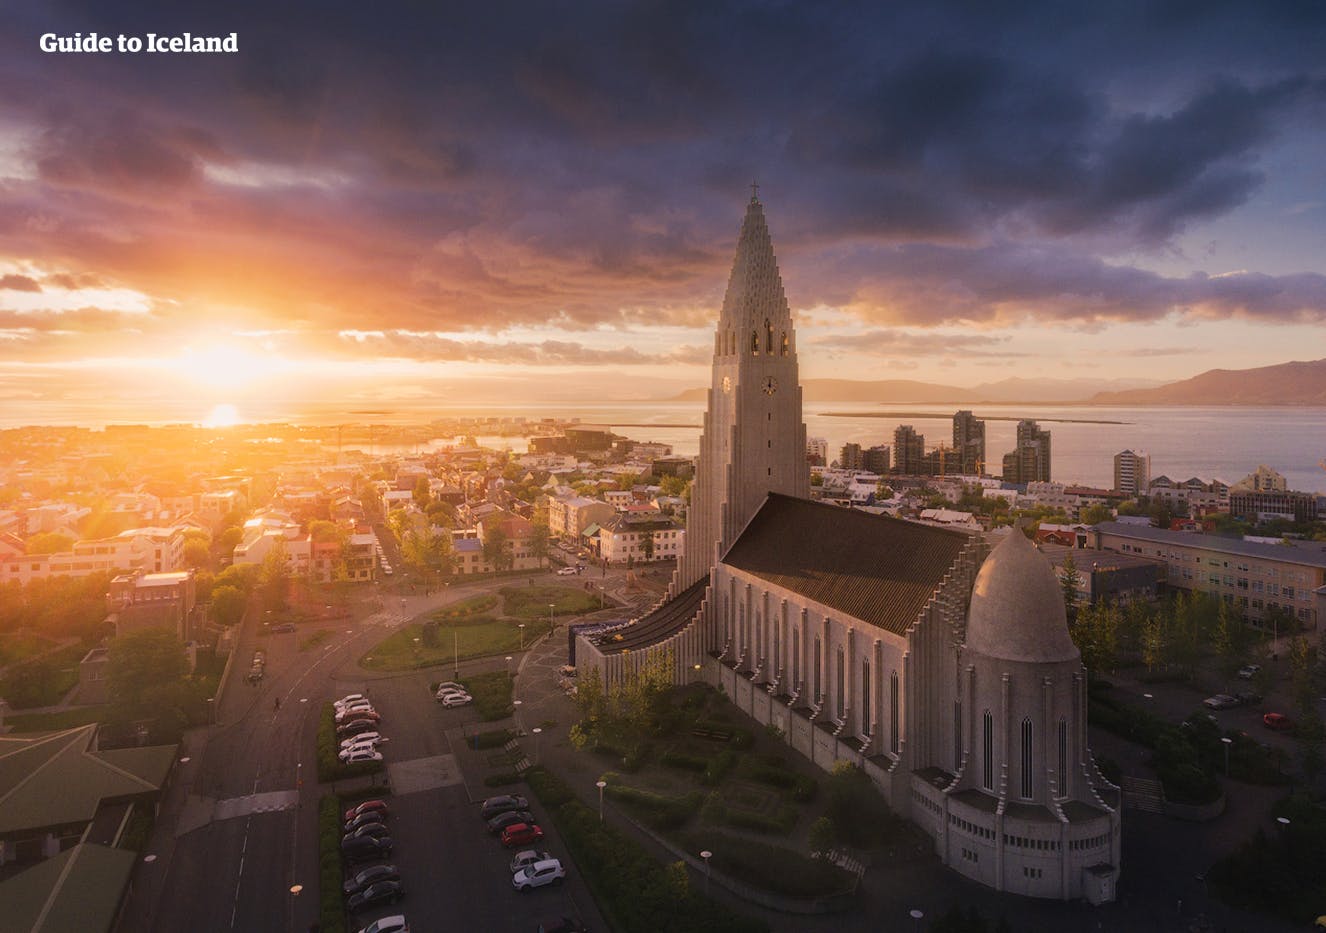 Die Stadt Reykjavík ist eine echte Mini-Metropole und die nördlichste Hauptstadt der Welt.